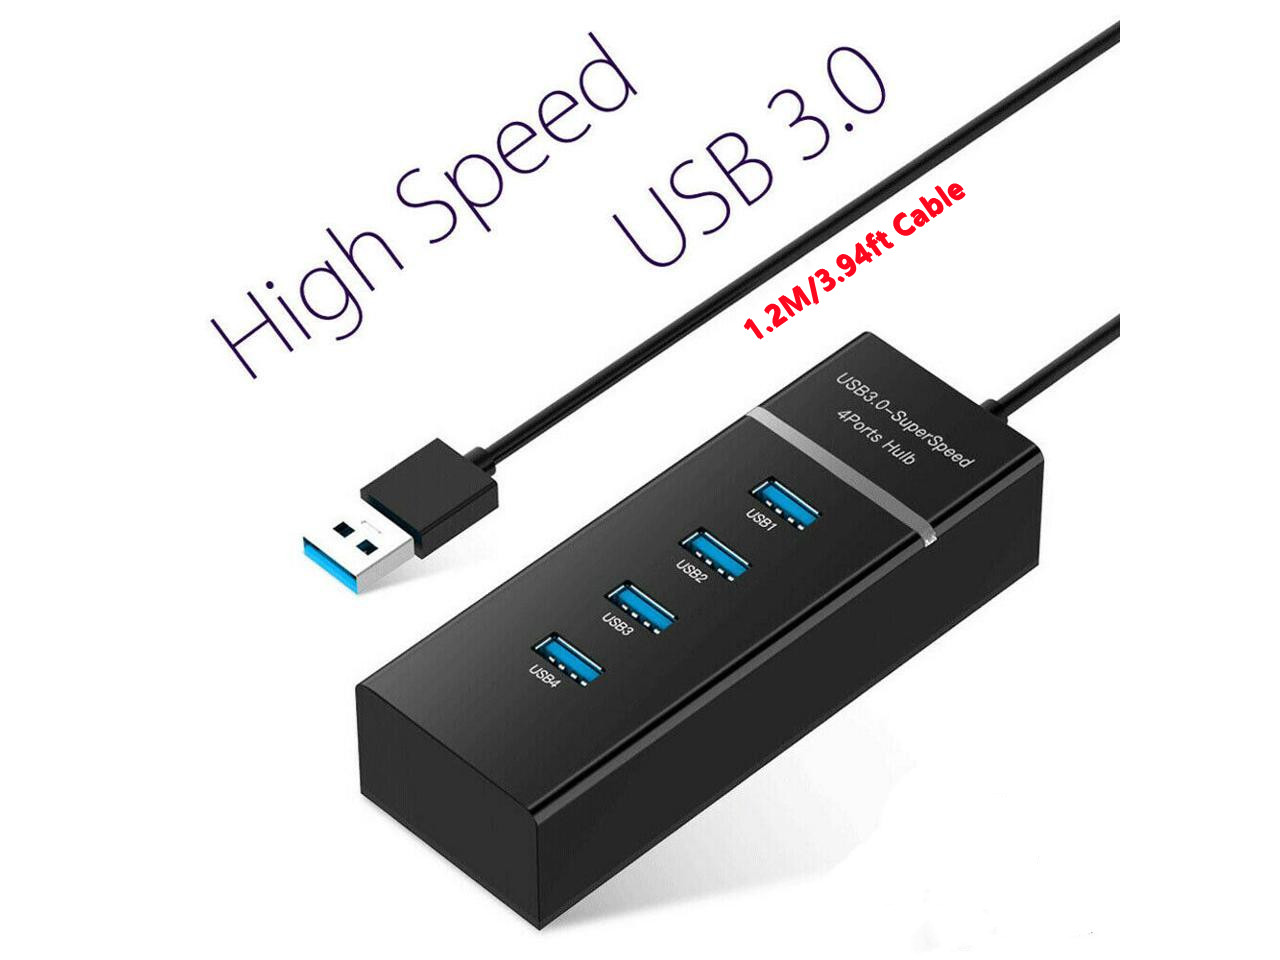 NeweggBusiness - BENFEI 4-Port USB 3.0 Hub Ultra-Slim USB 3.0 Hub